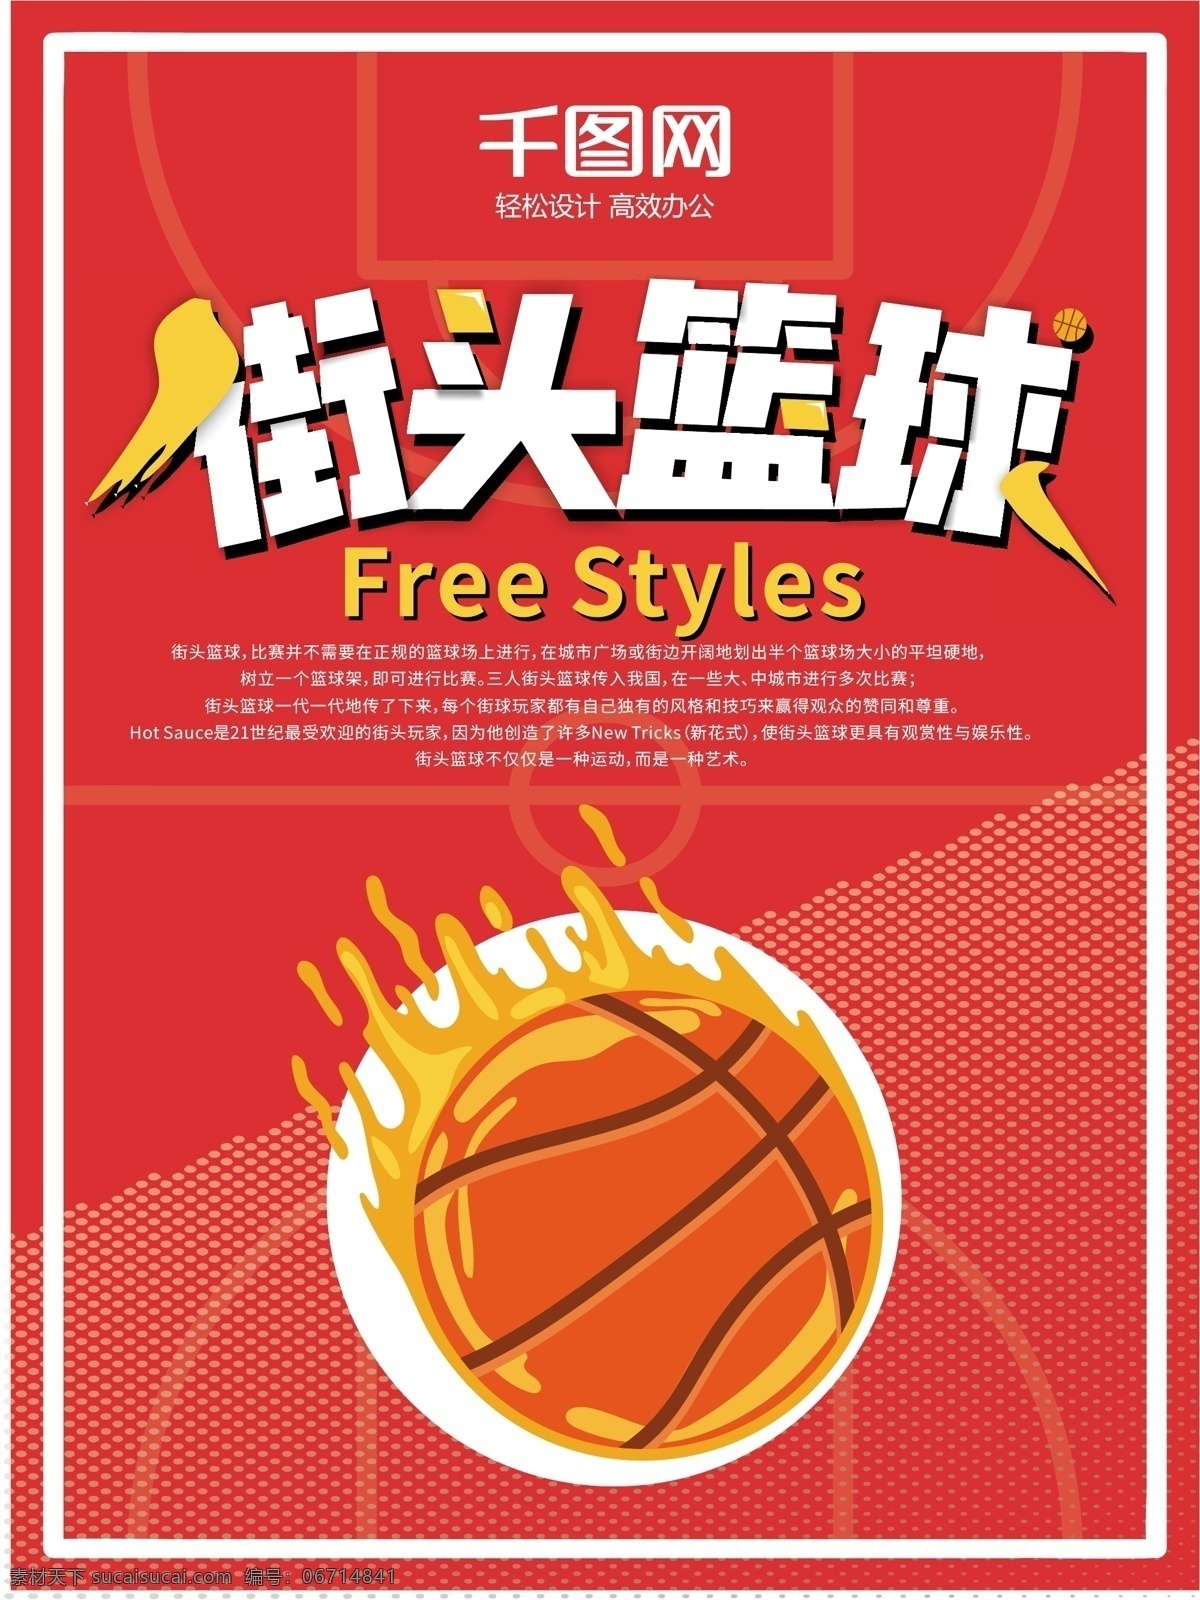 卡通 涂鸦 风 街头篮球 体育运动 宣传海报 可爱 创意 体育 运动 锻炼 艺术 竞技比赛 橙色